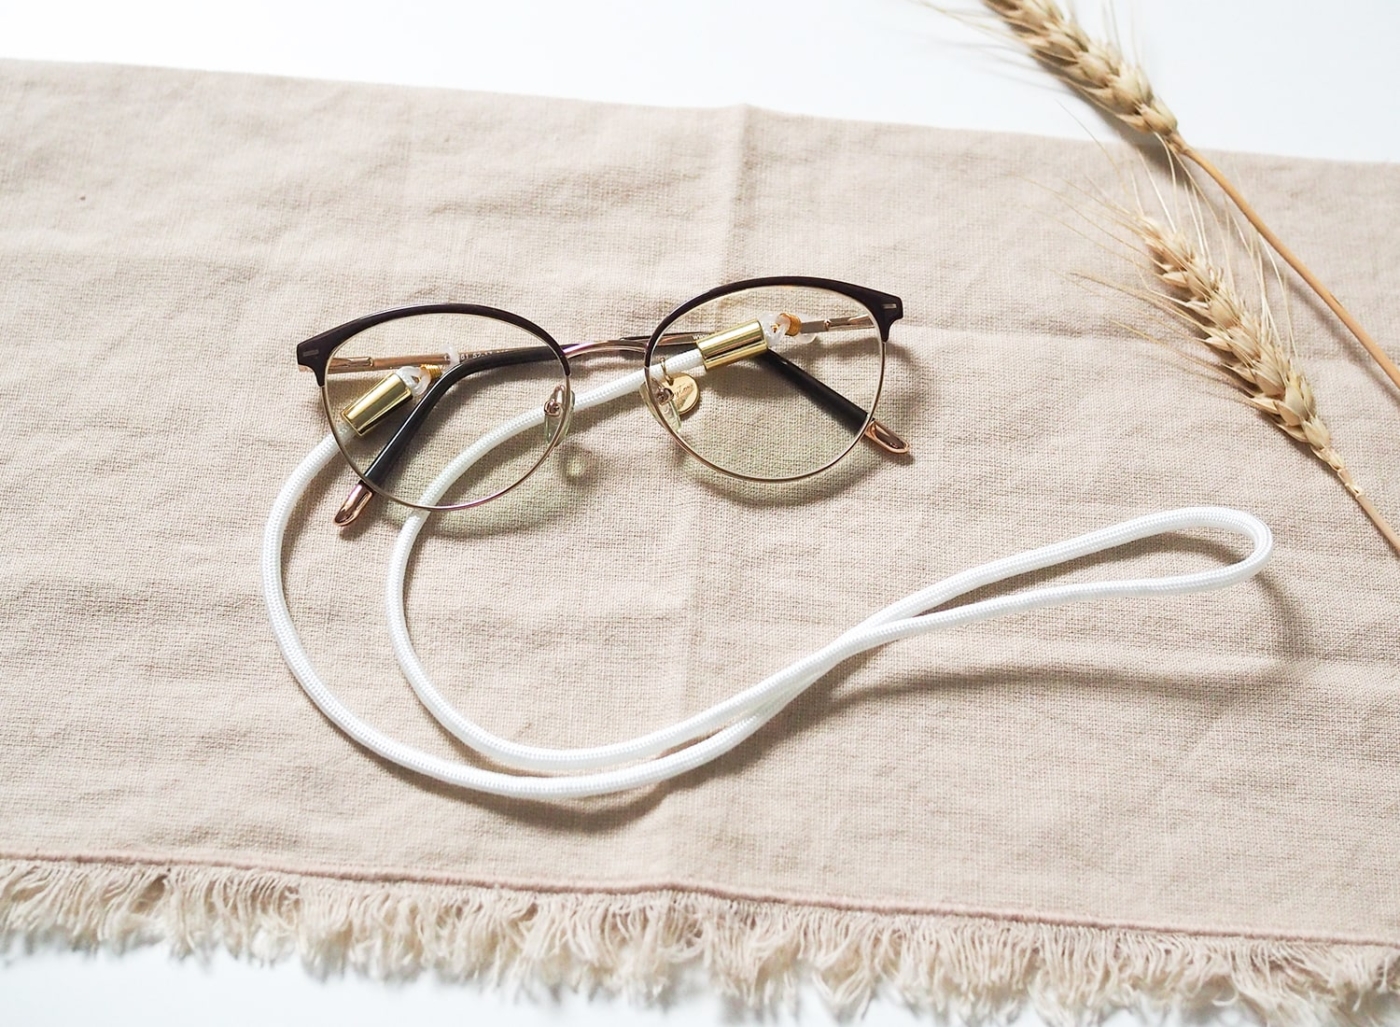 Brillenband aus Nylon/Stoff in weiß mit goldenen Elementen an Brille.